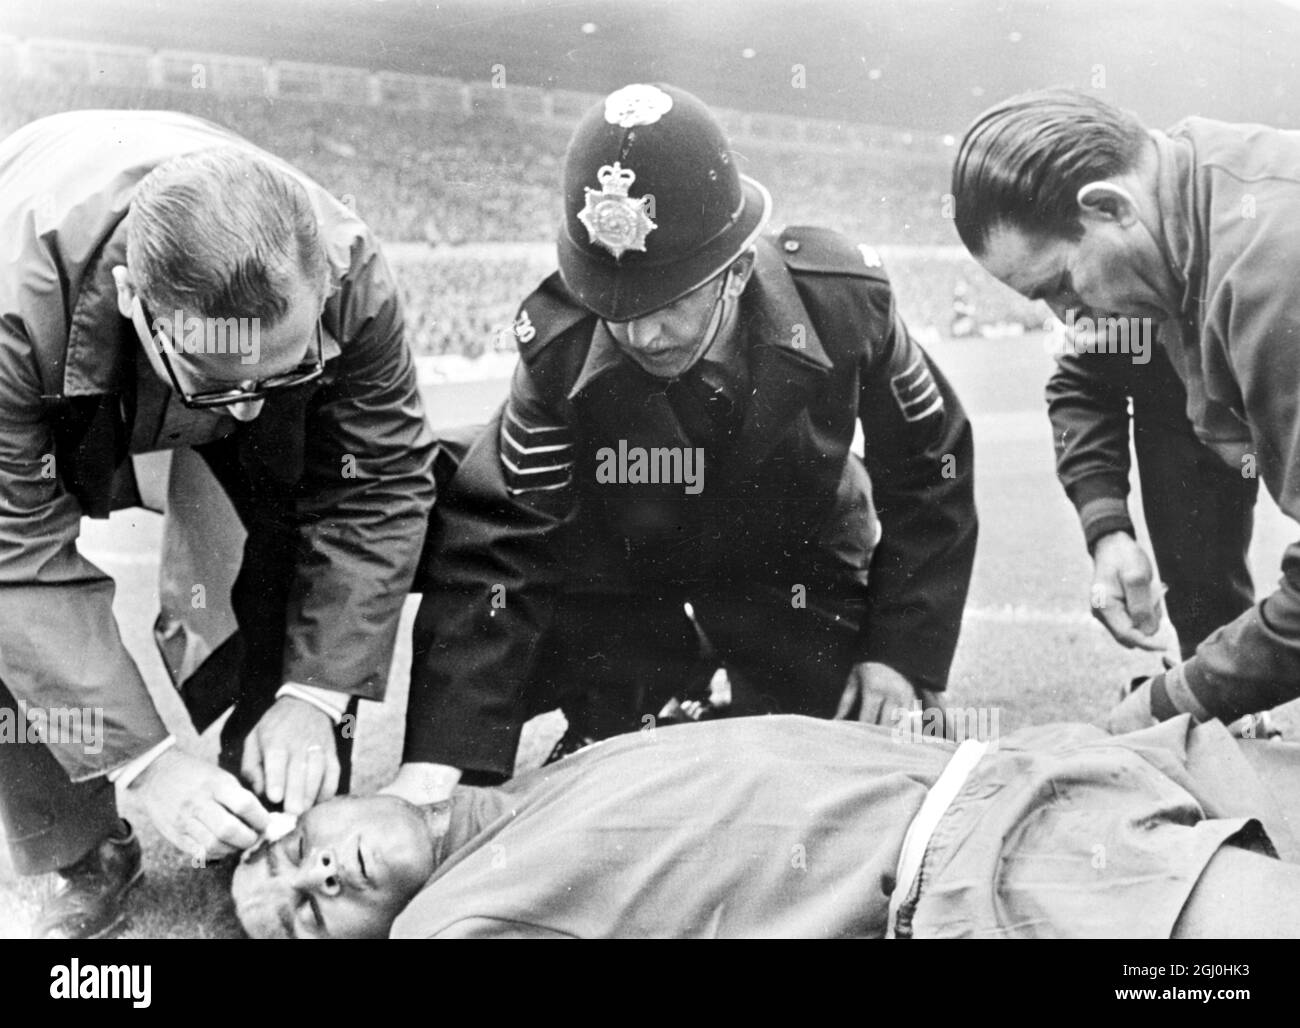 1966 Coppa del mondo Portogallo / Ungheria. Eusebio in Portogallo è raffigurato ricevendo l'attenzione di funzionari e poliziotti, dopo che è stato ferito durante la partita. Il Portogallo ha vinto 3-1. 13 luglio 1966 Foto Stock